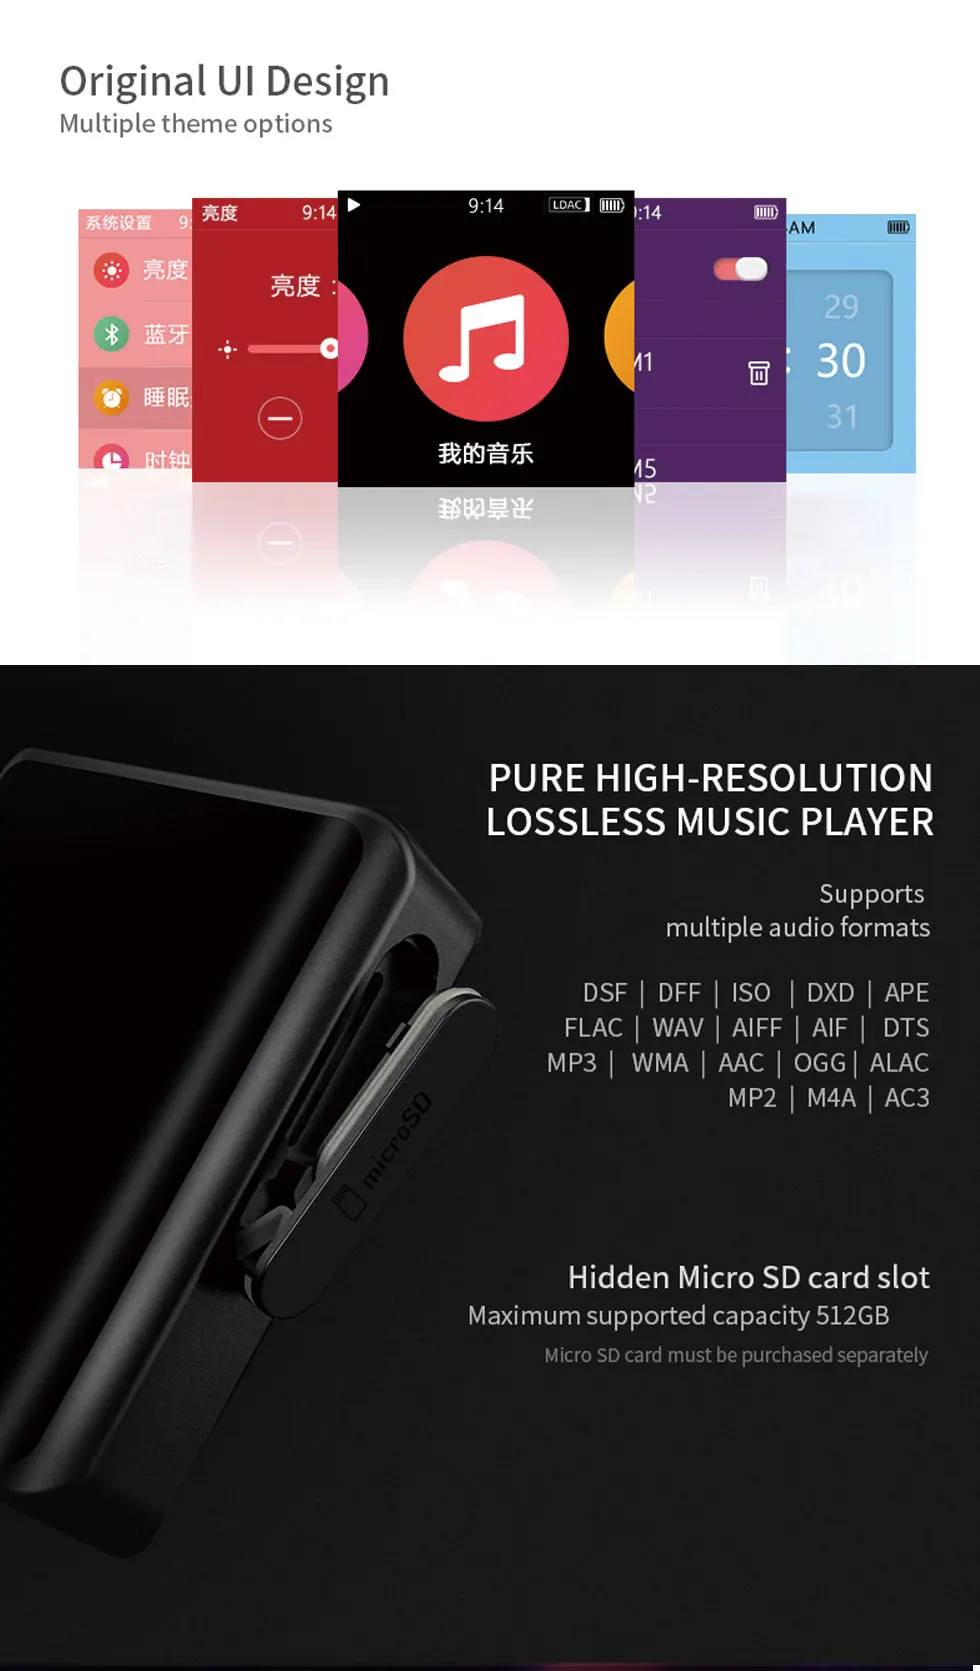 Новинка SHANLING M0 DSD High-Res музыкальный плеер Портативный hifi мини спортивный MP3 с aptX Bluetooth 4,1 Поддержка TF карты